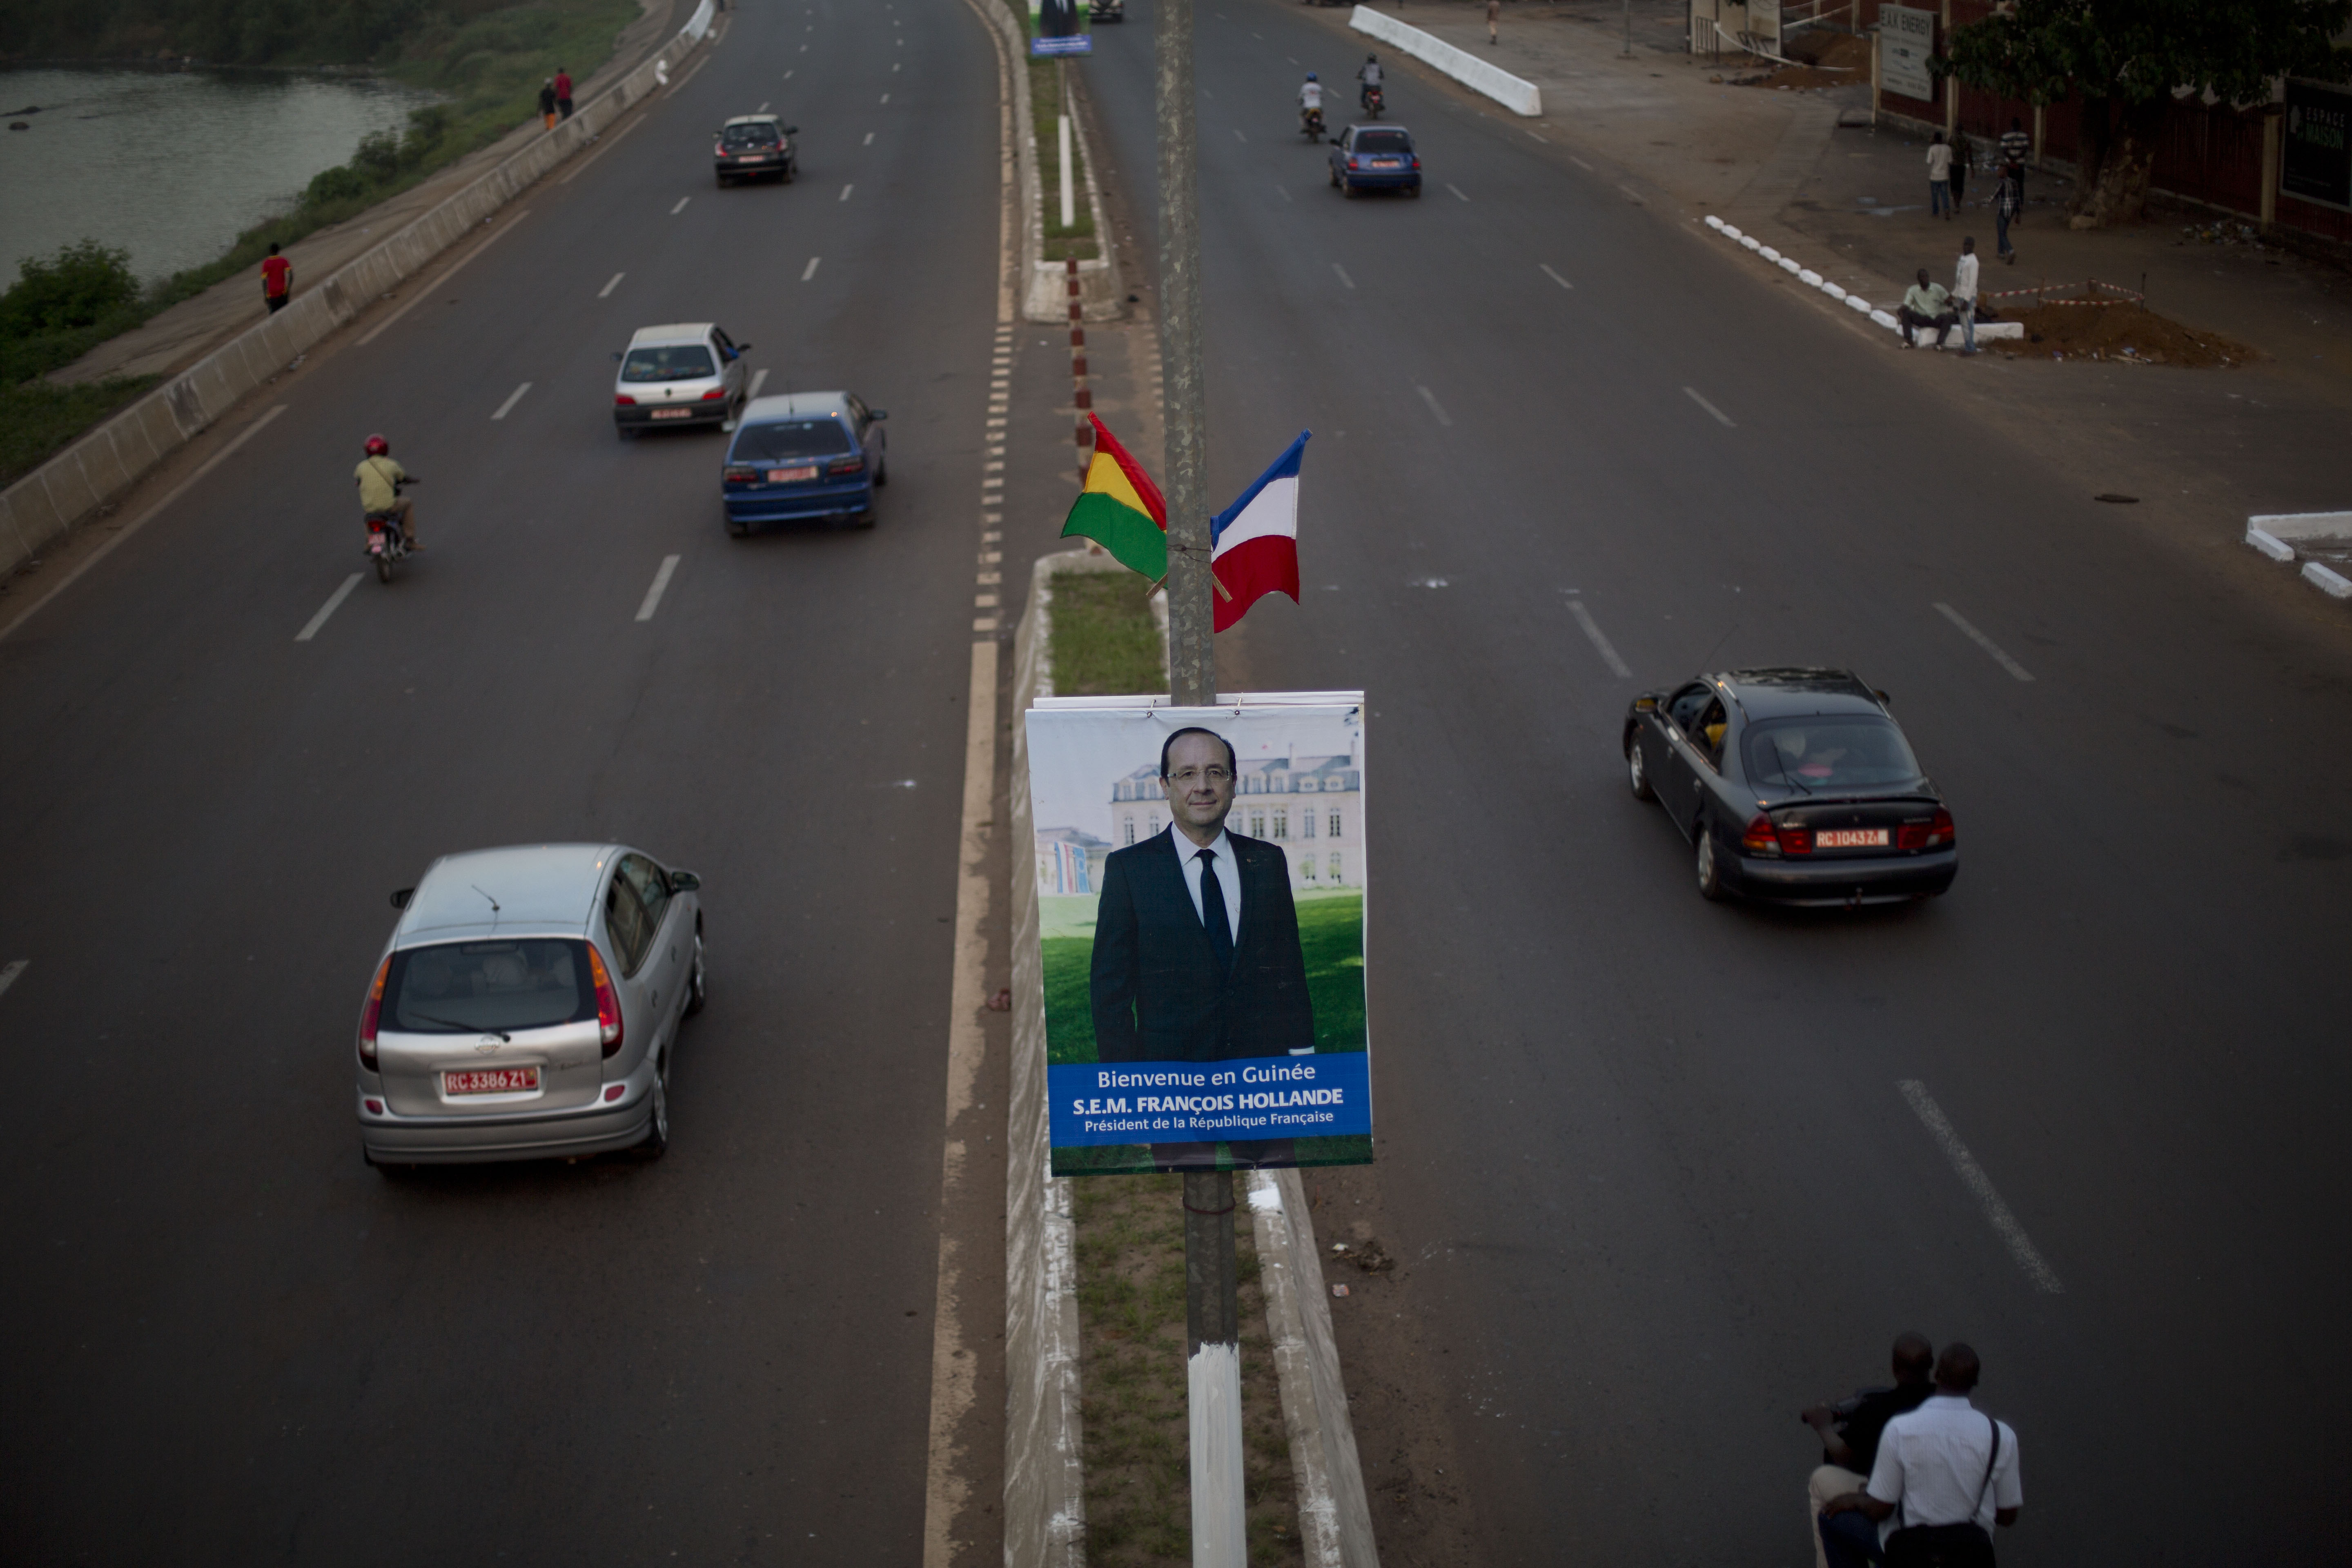 Ολάντ: Ο πρώτος δυτικός ηγέτης στη Γουινέα στην μετα – Eμπολα εποχή